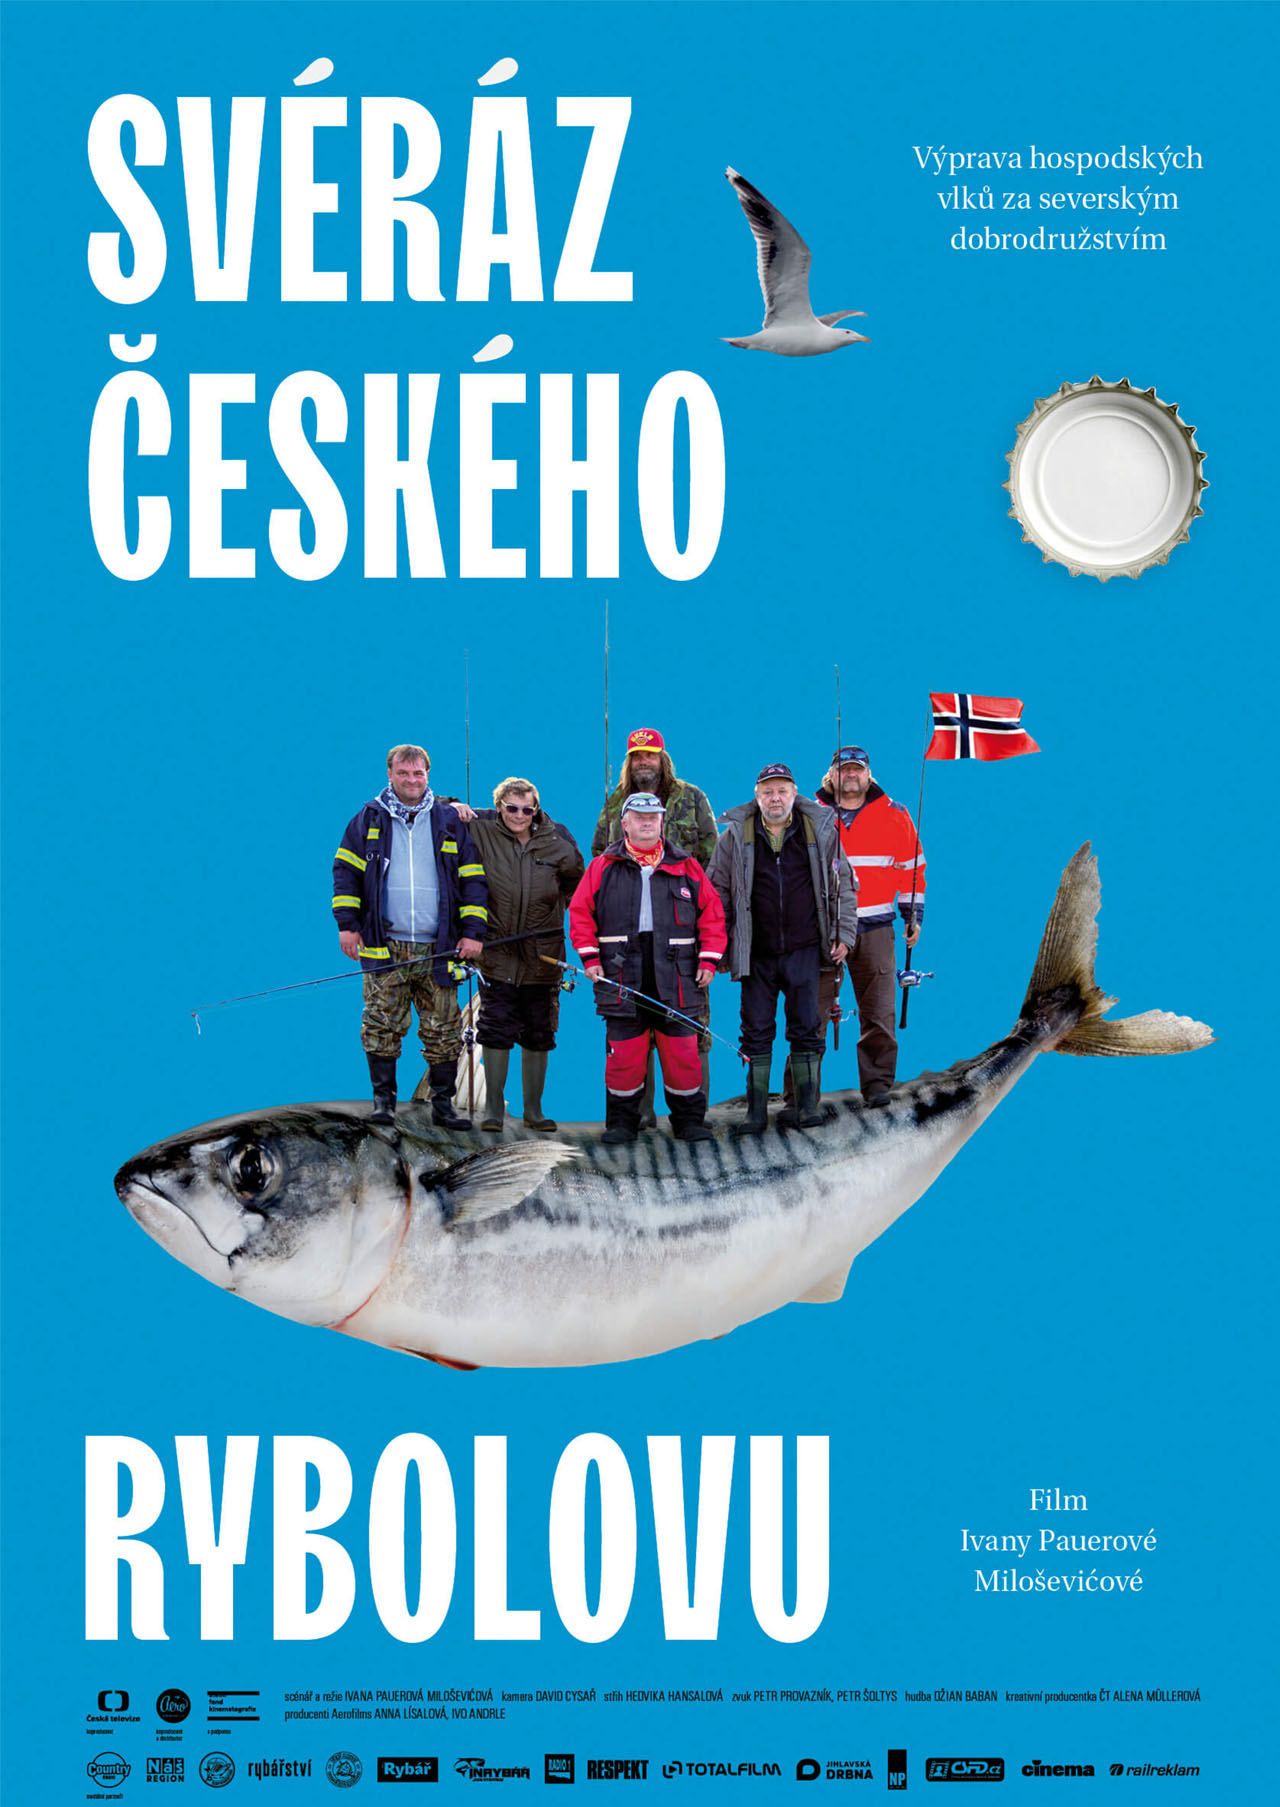 Dopis ČT v reakci na film "Svéráz českého rybolovu"